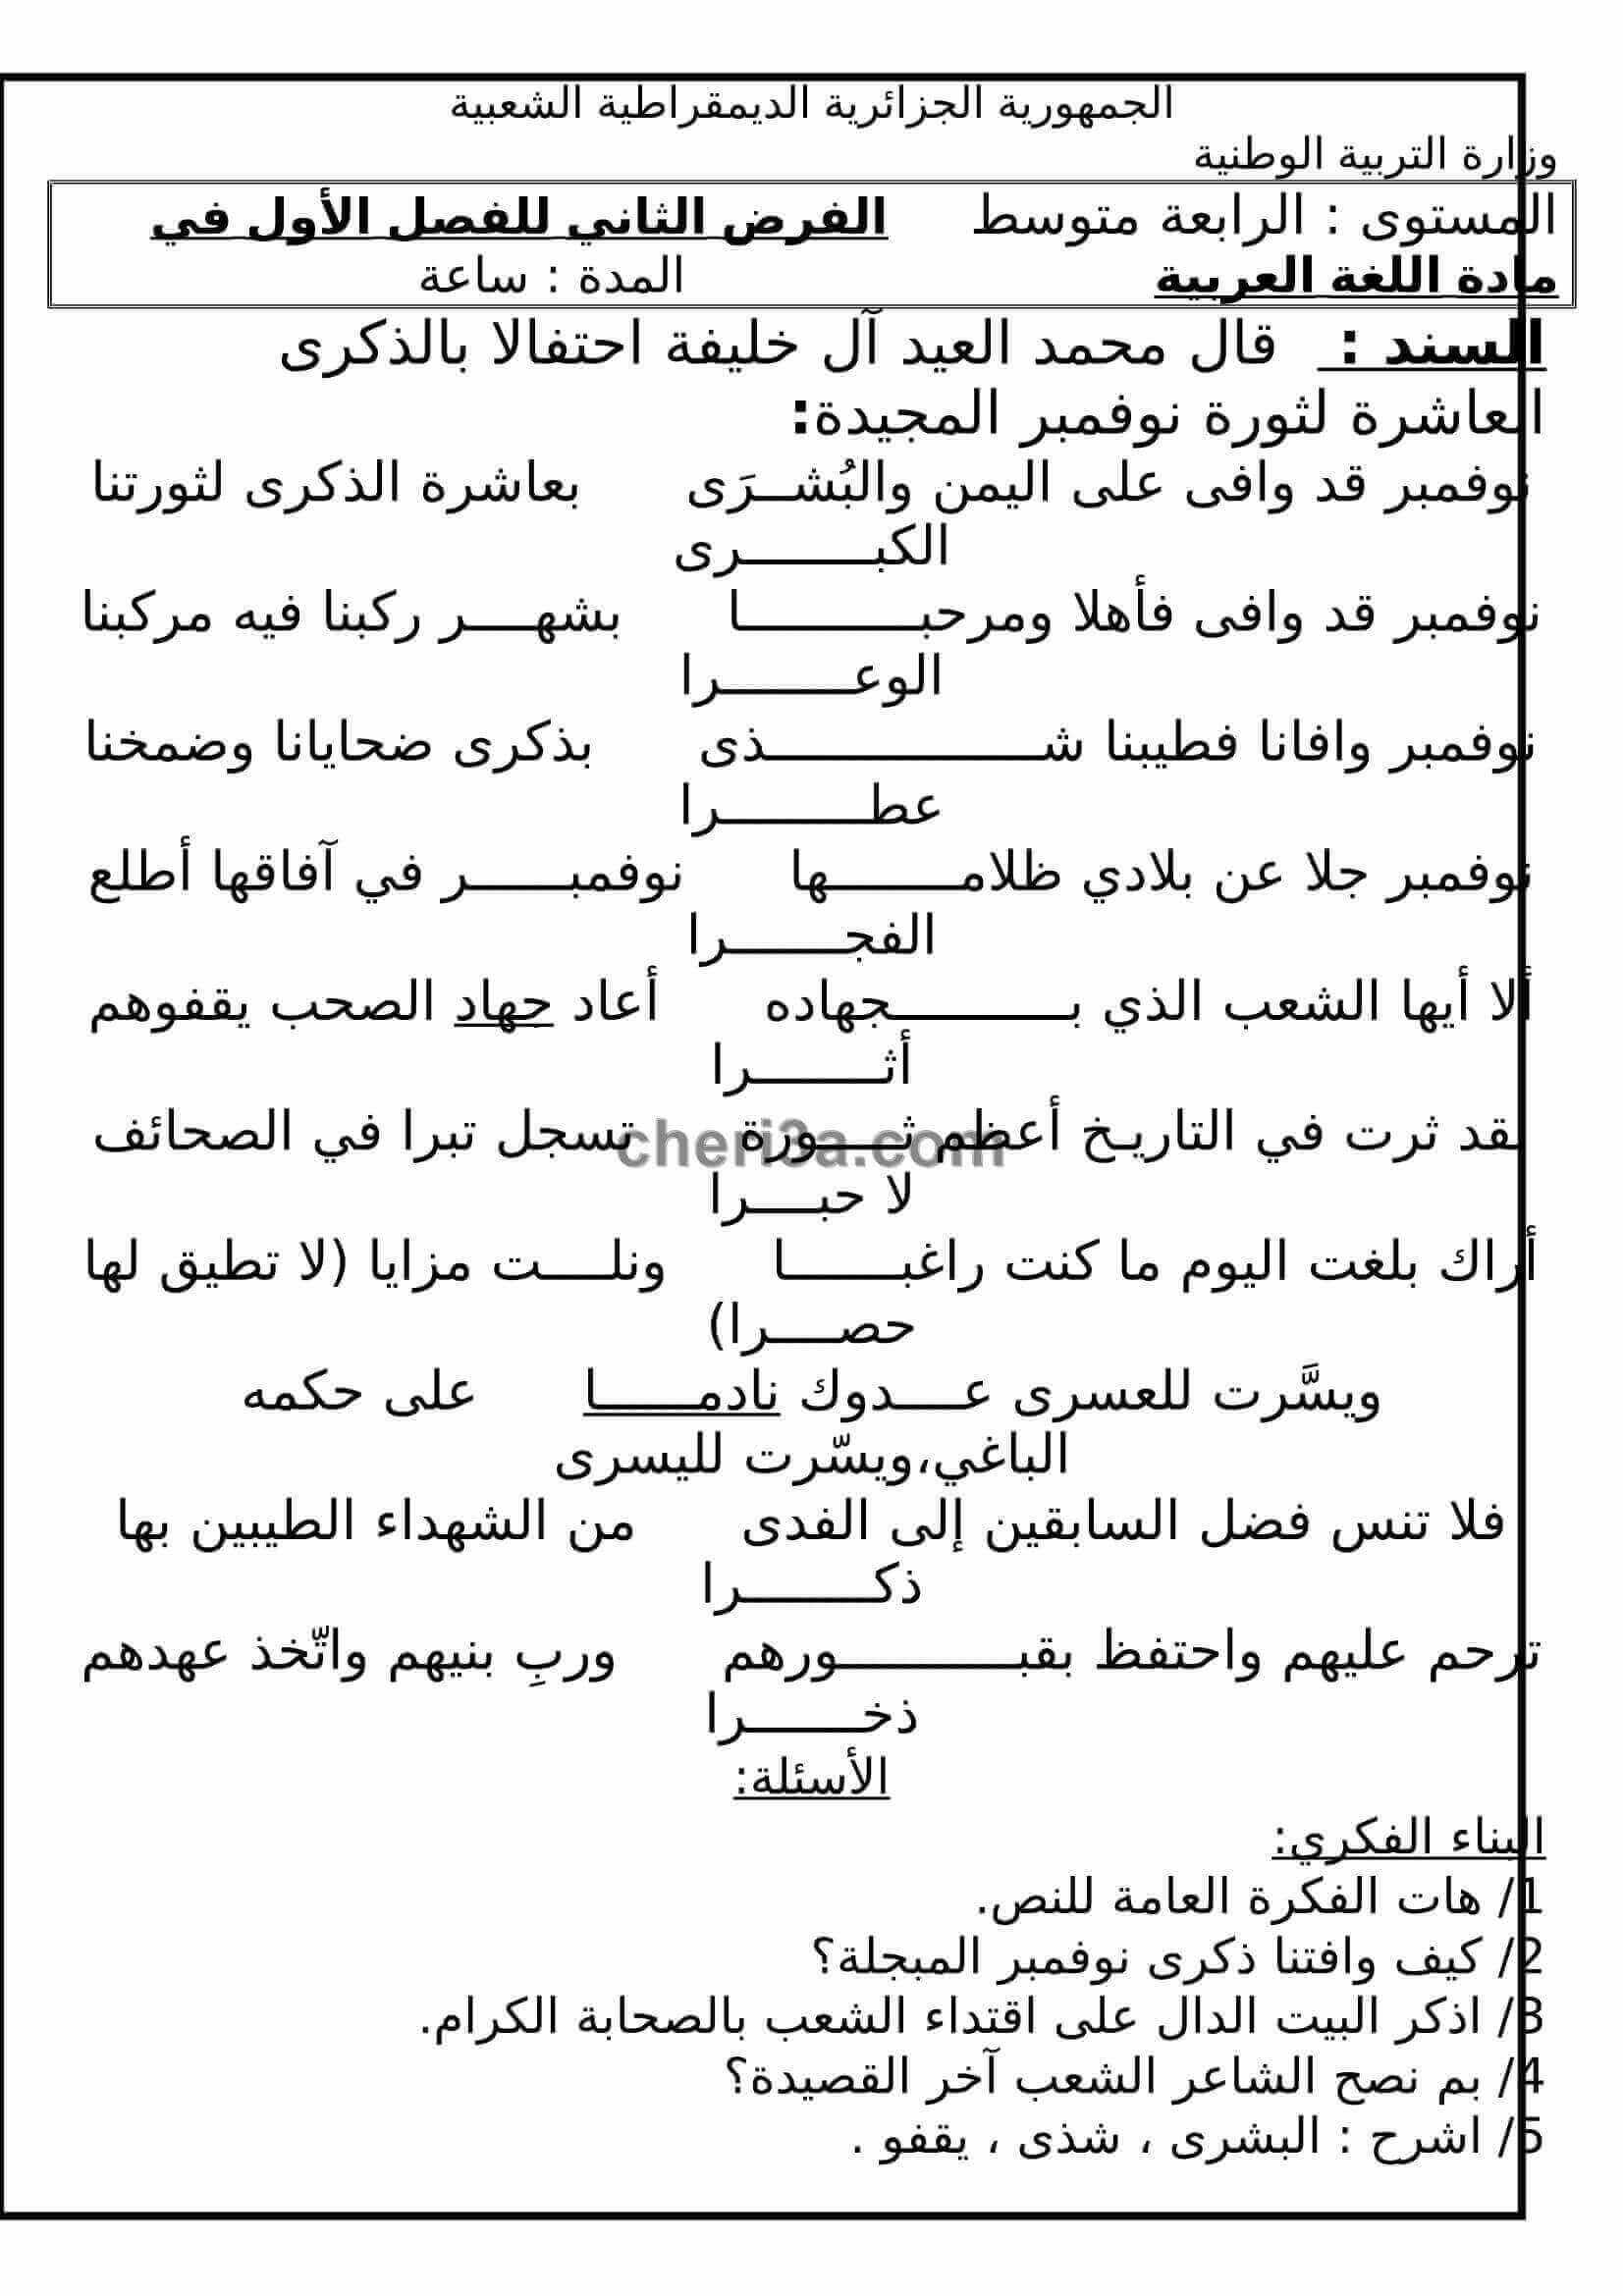 اختبار الفصل الاول للسنة الرابعة متوسط في اللغة العربية النموذج 2